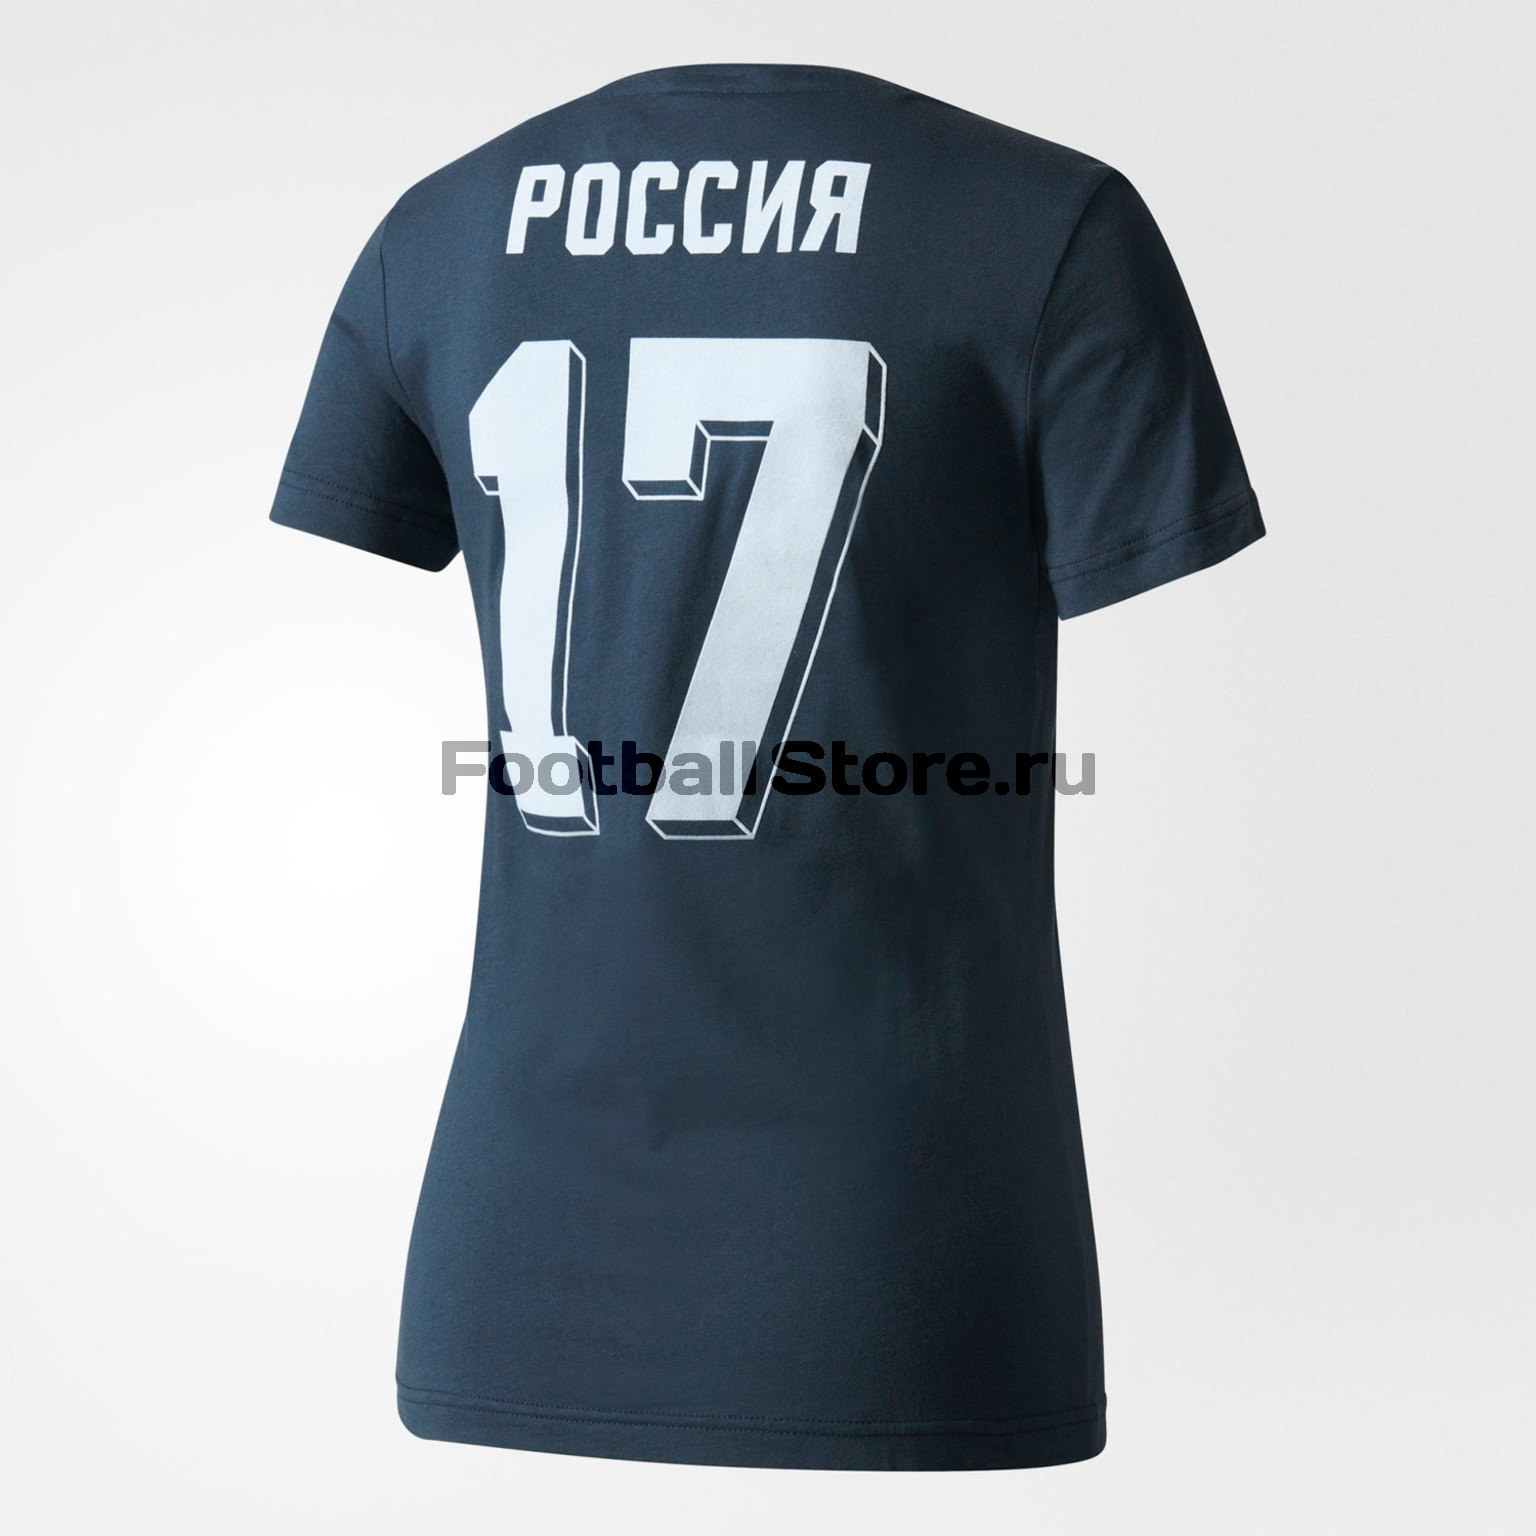 Футболка женская Adidas "Россия" AZ3790